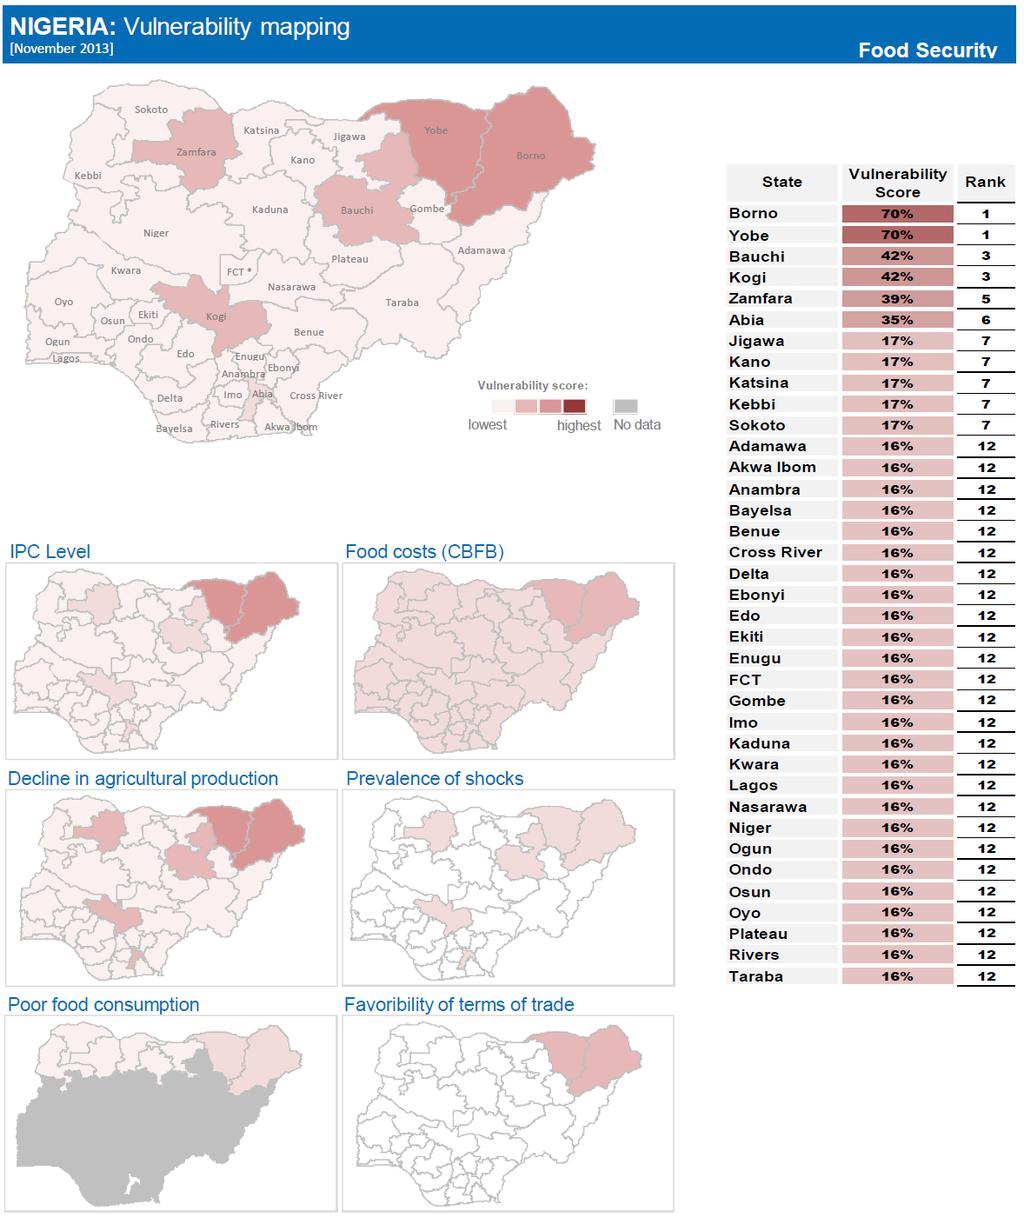 Source: OCHA November 2013 The 8 Sahelian states of Kebbi, Zamfara, Sokoto, Katsina, Kano, Jigawa, Yobe, and Borno have the highest rates of food insecurity.